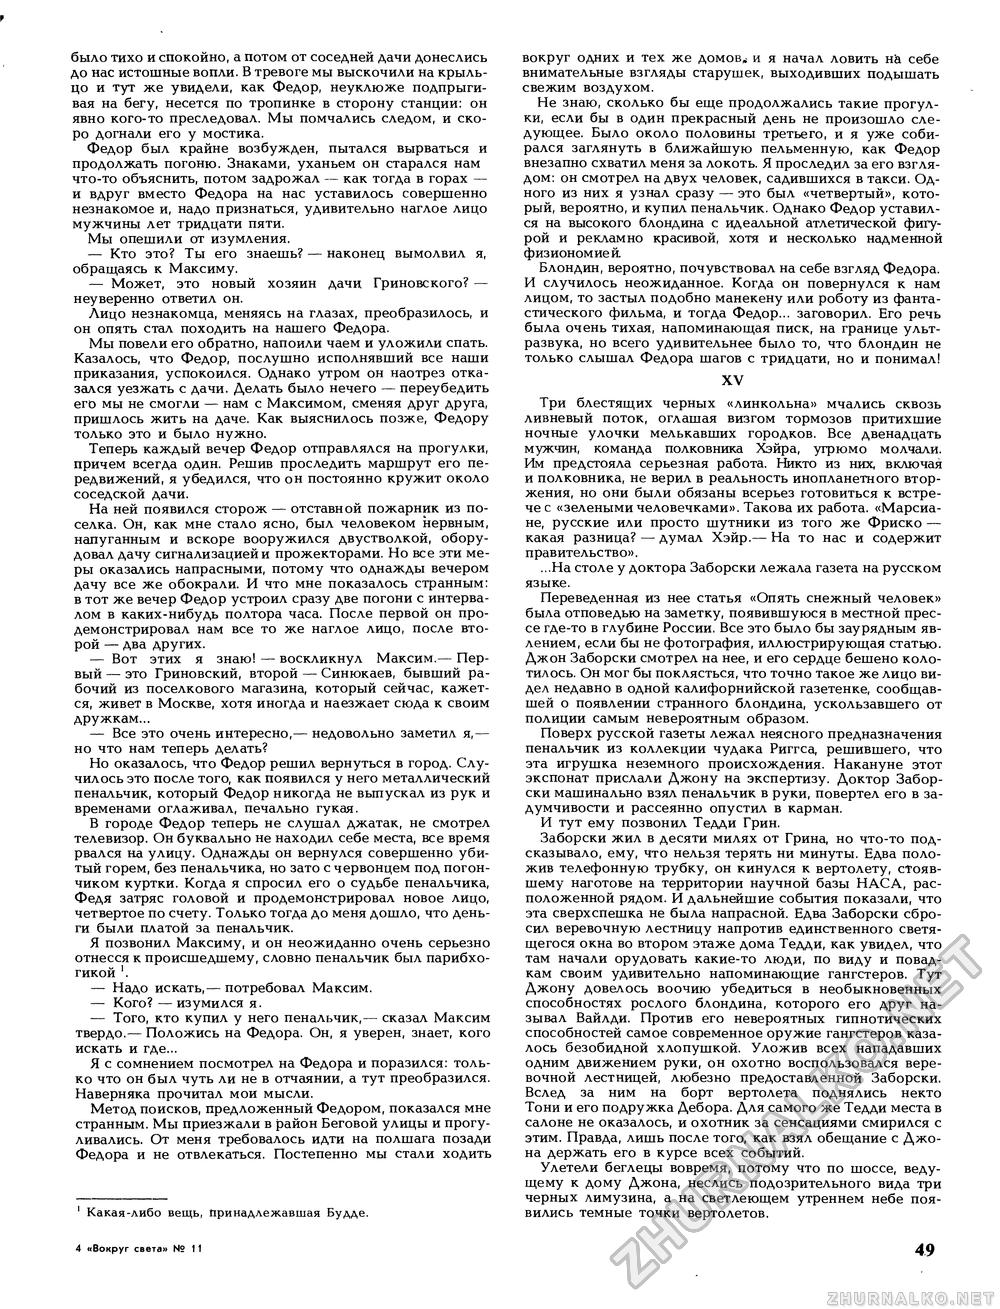 Вокруг света 1989-11, страница 51